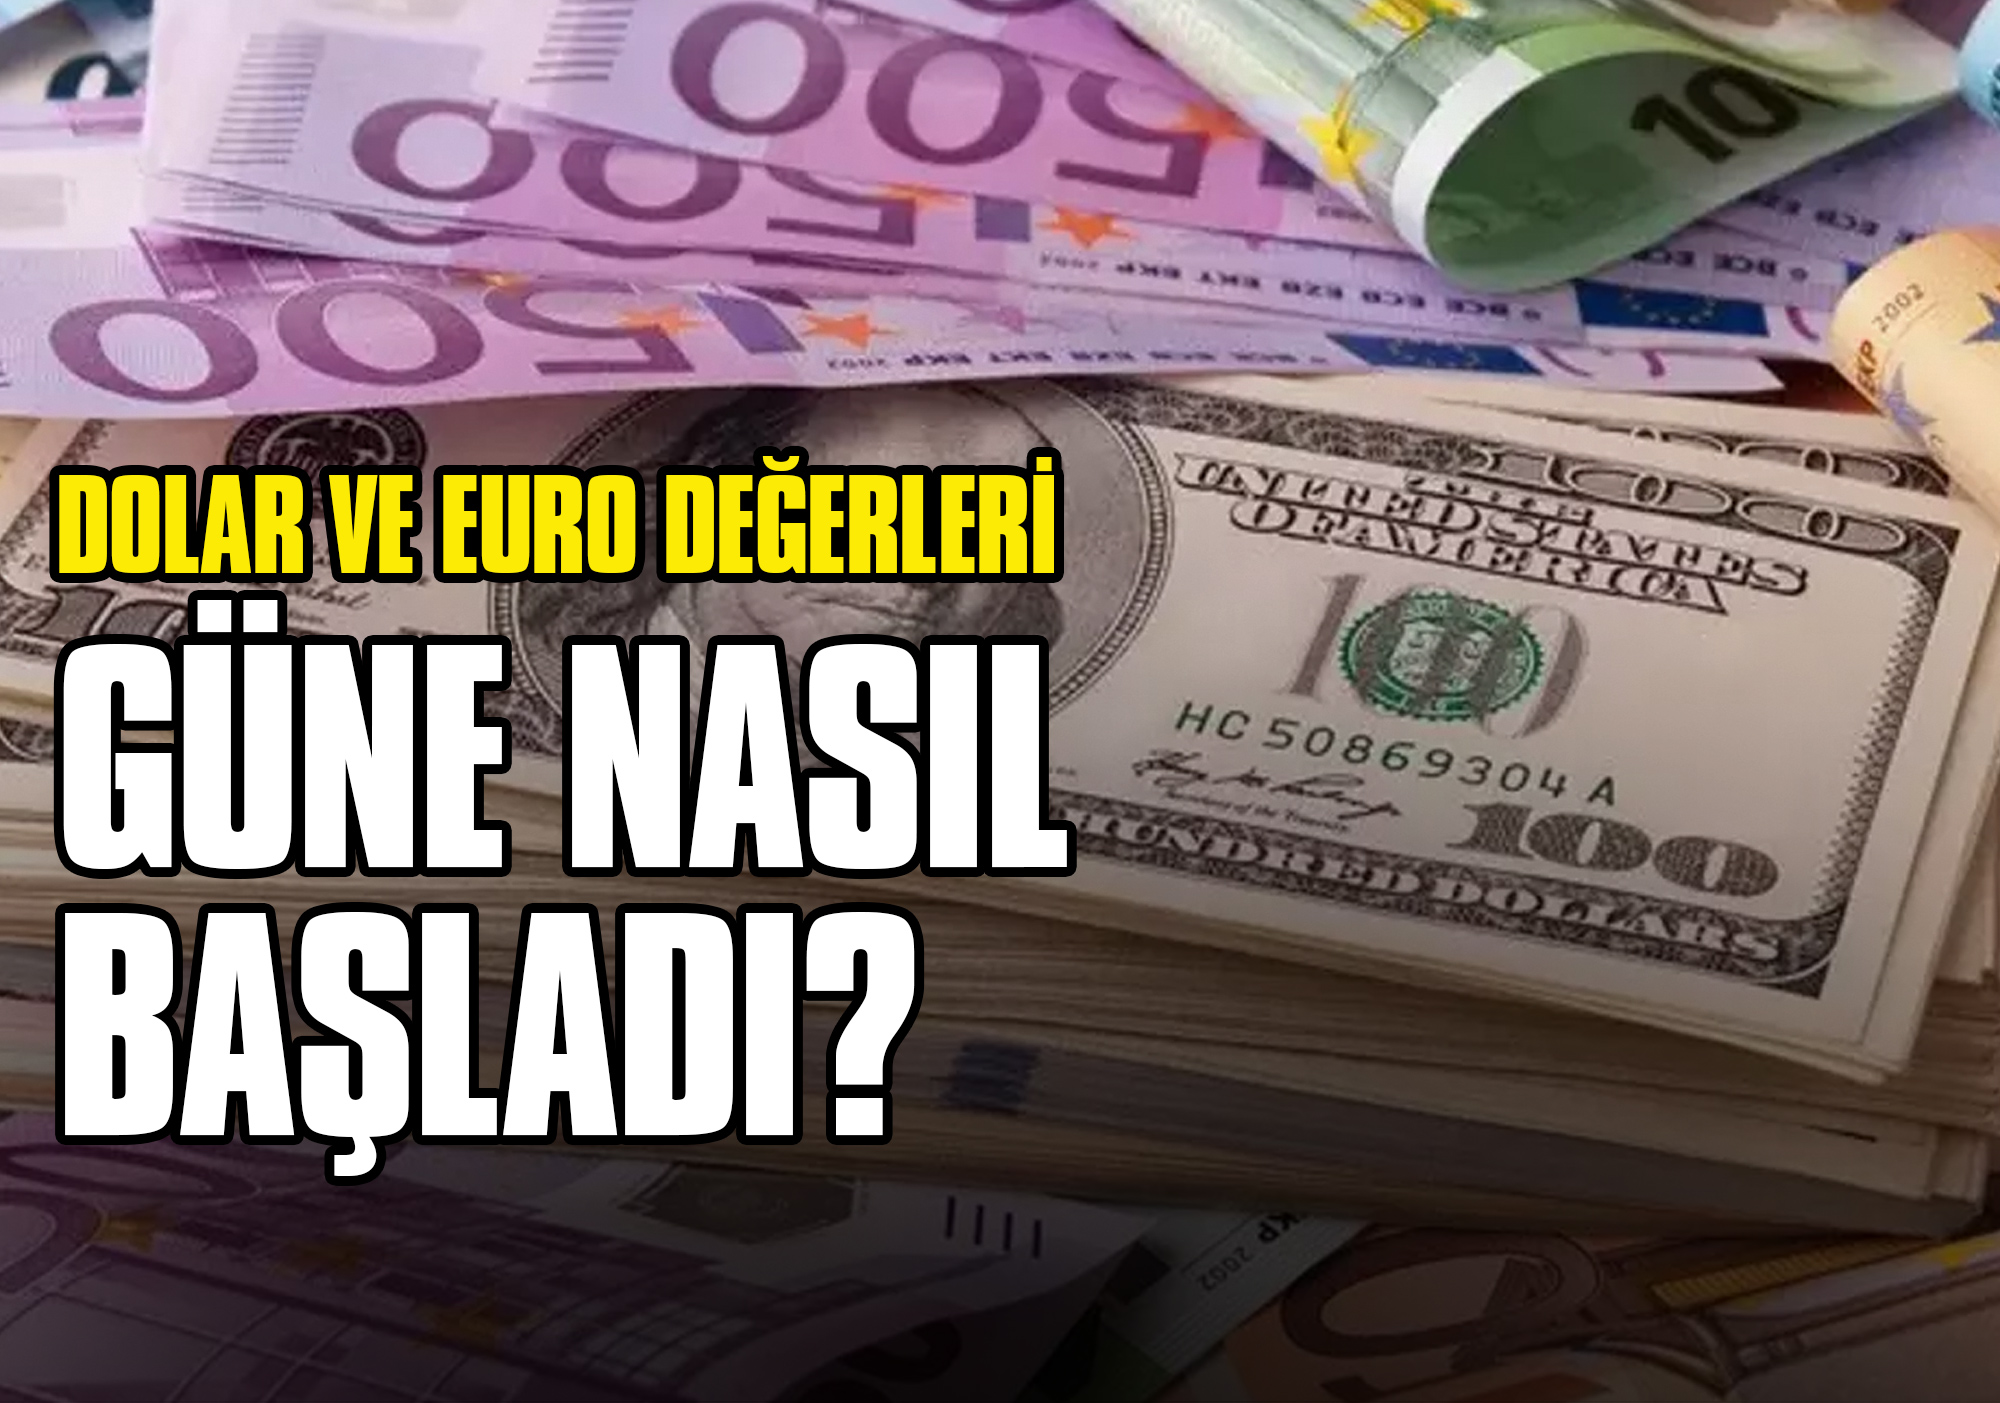 Dolar ve Euro Değerleri Güne Nasıl Başladı?